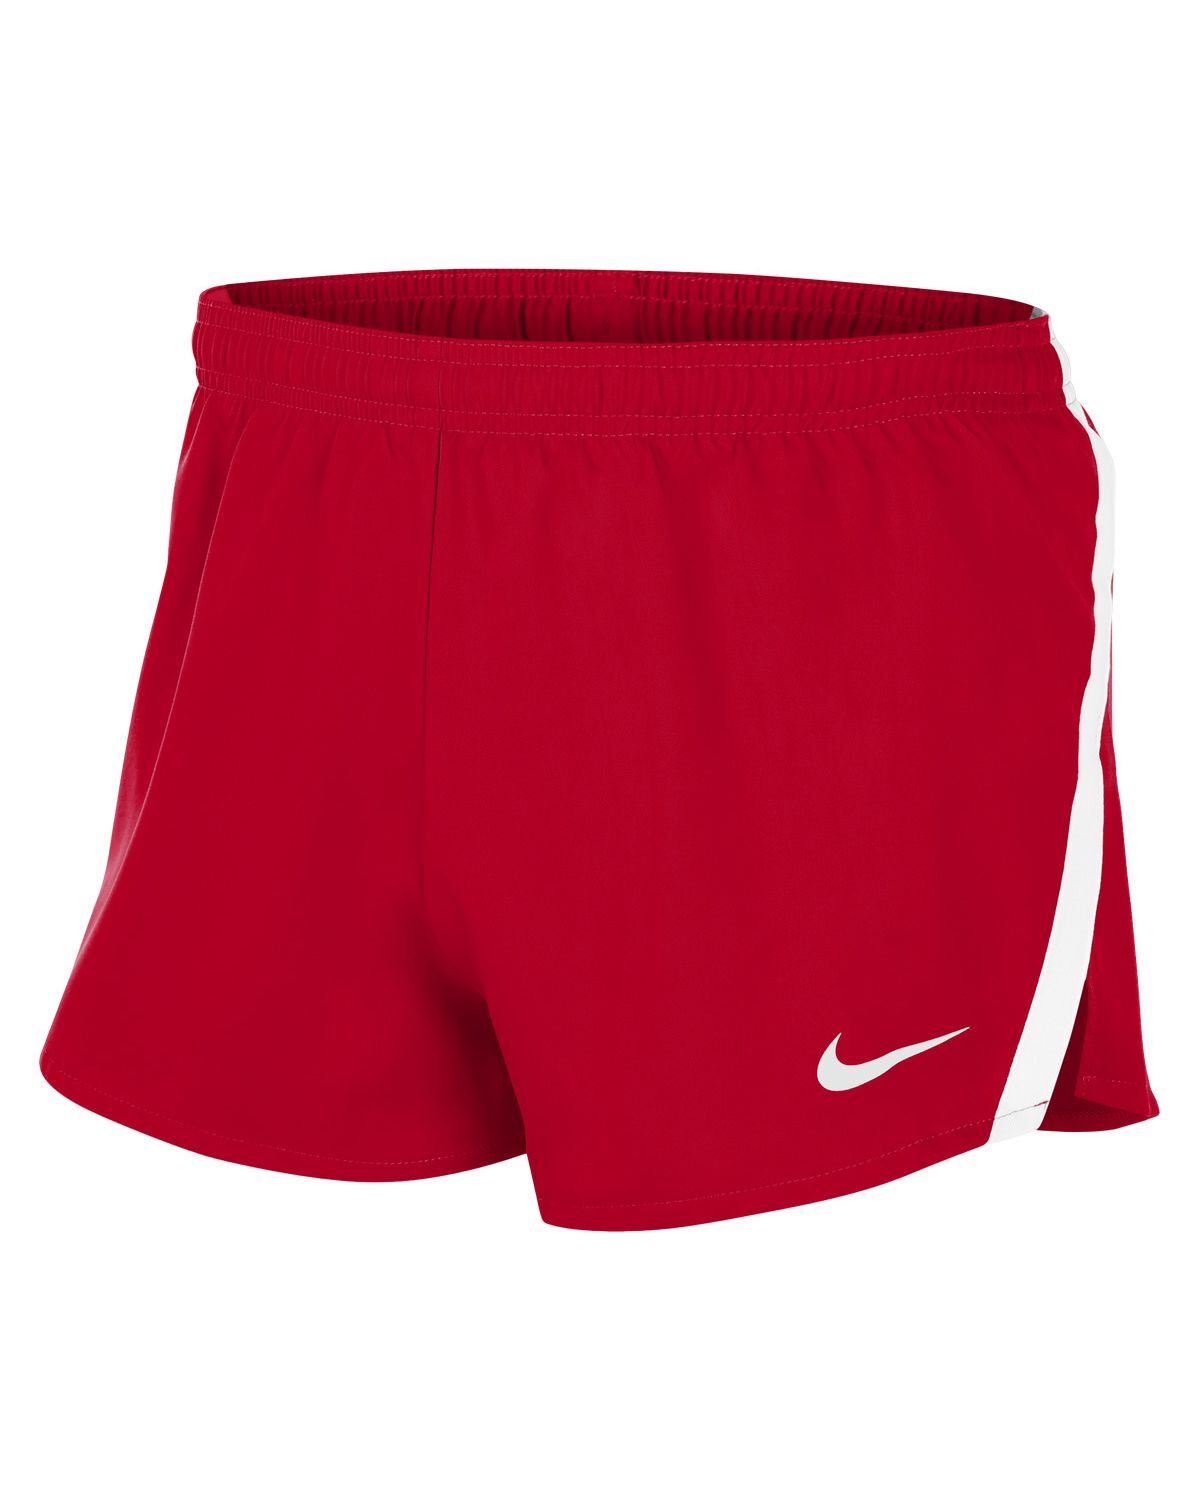 Pantalón corto para correr Nike Stock Rojo Hombre - NT0303-657